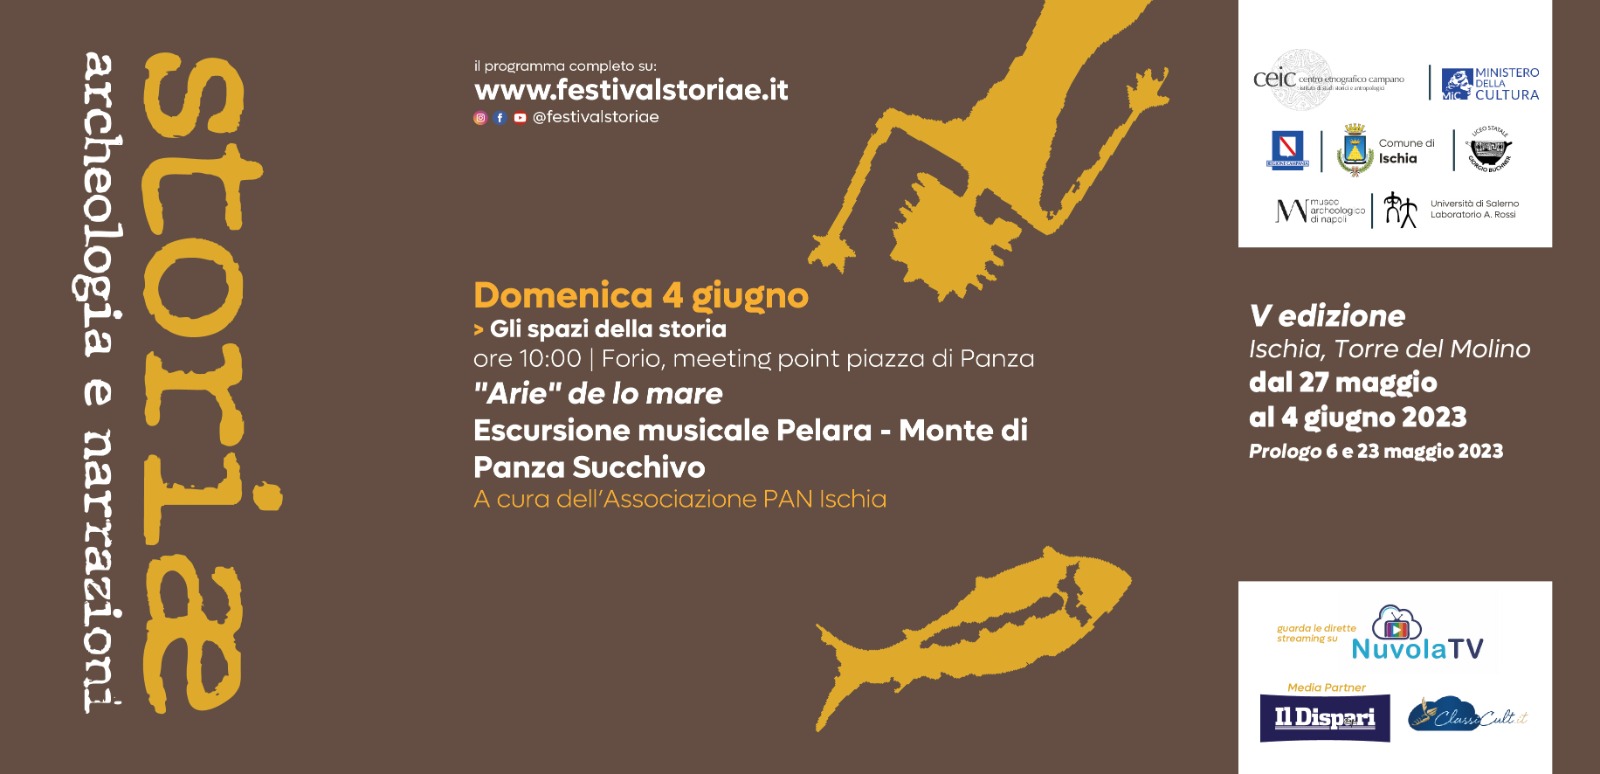 Escursione musicale "Arie" de lo mare: Pelara - Monte di Panza - Succhivo  e degustazione in cantina